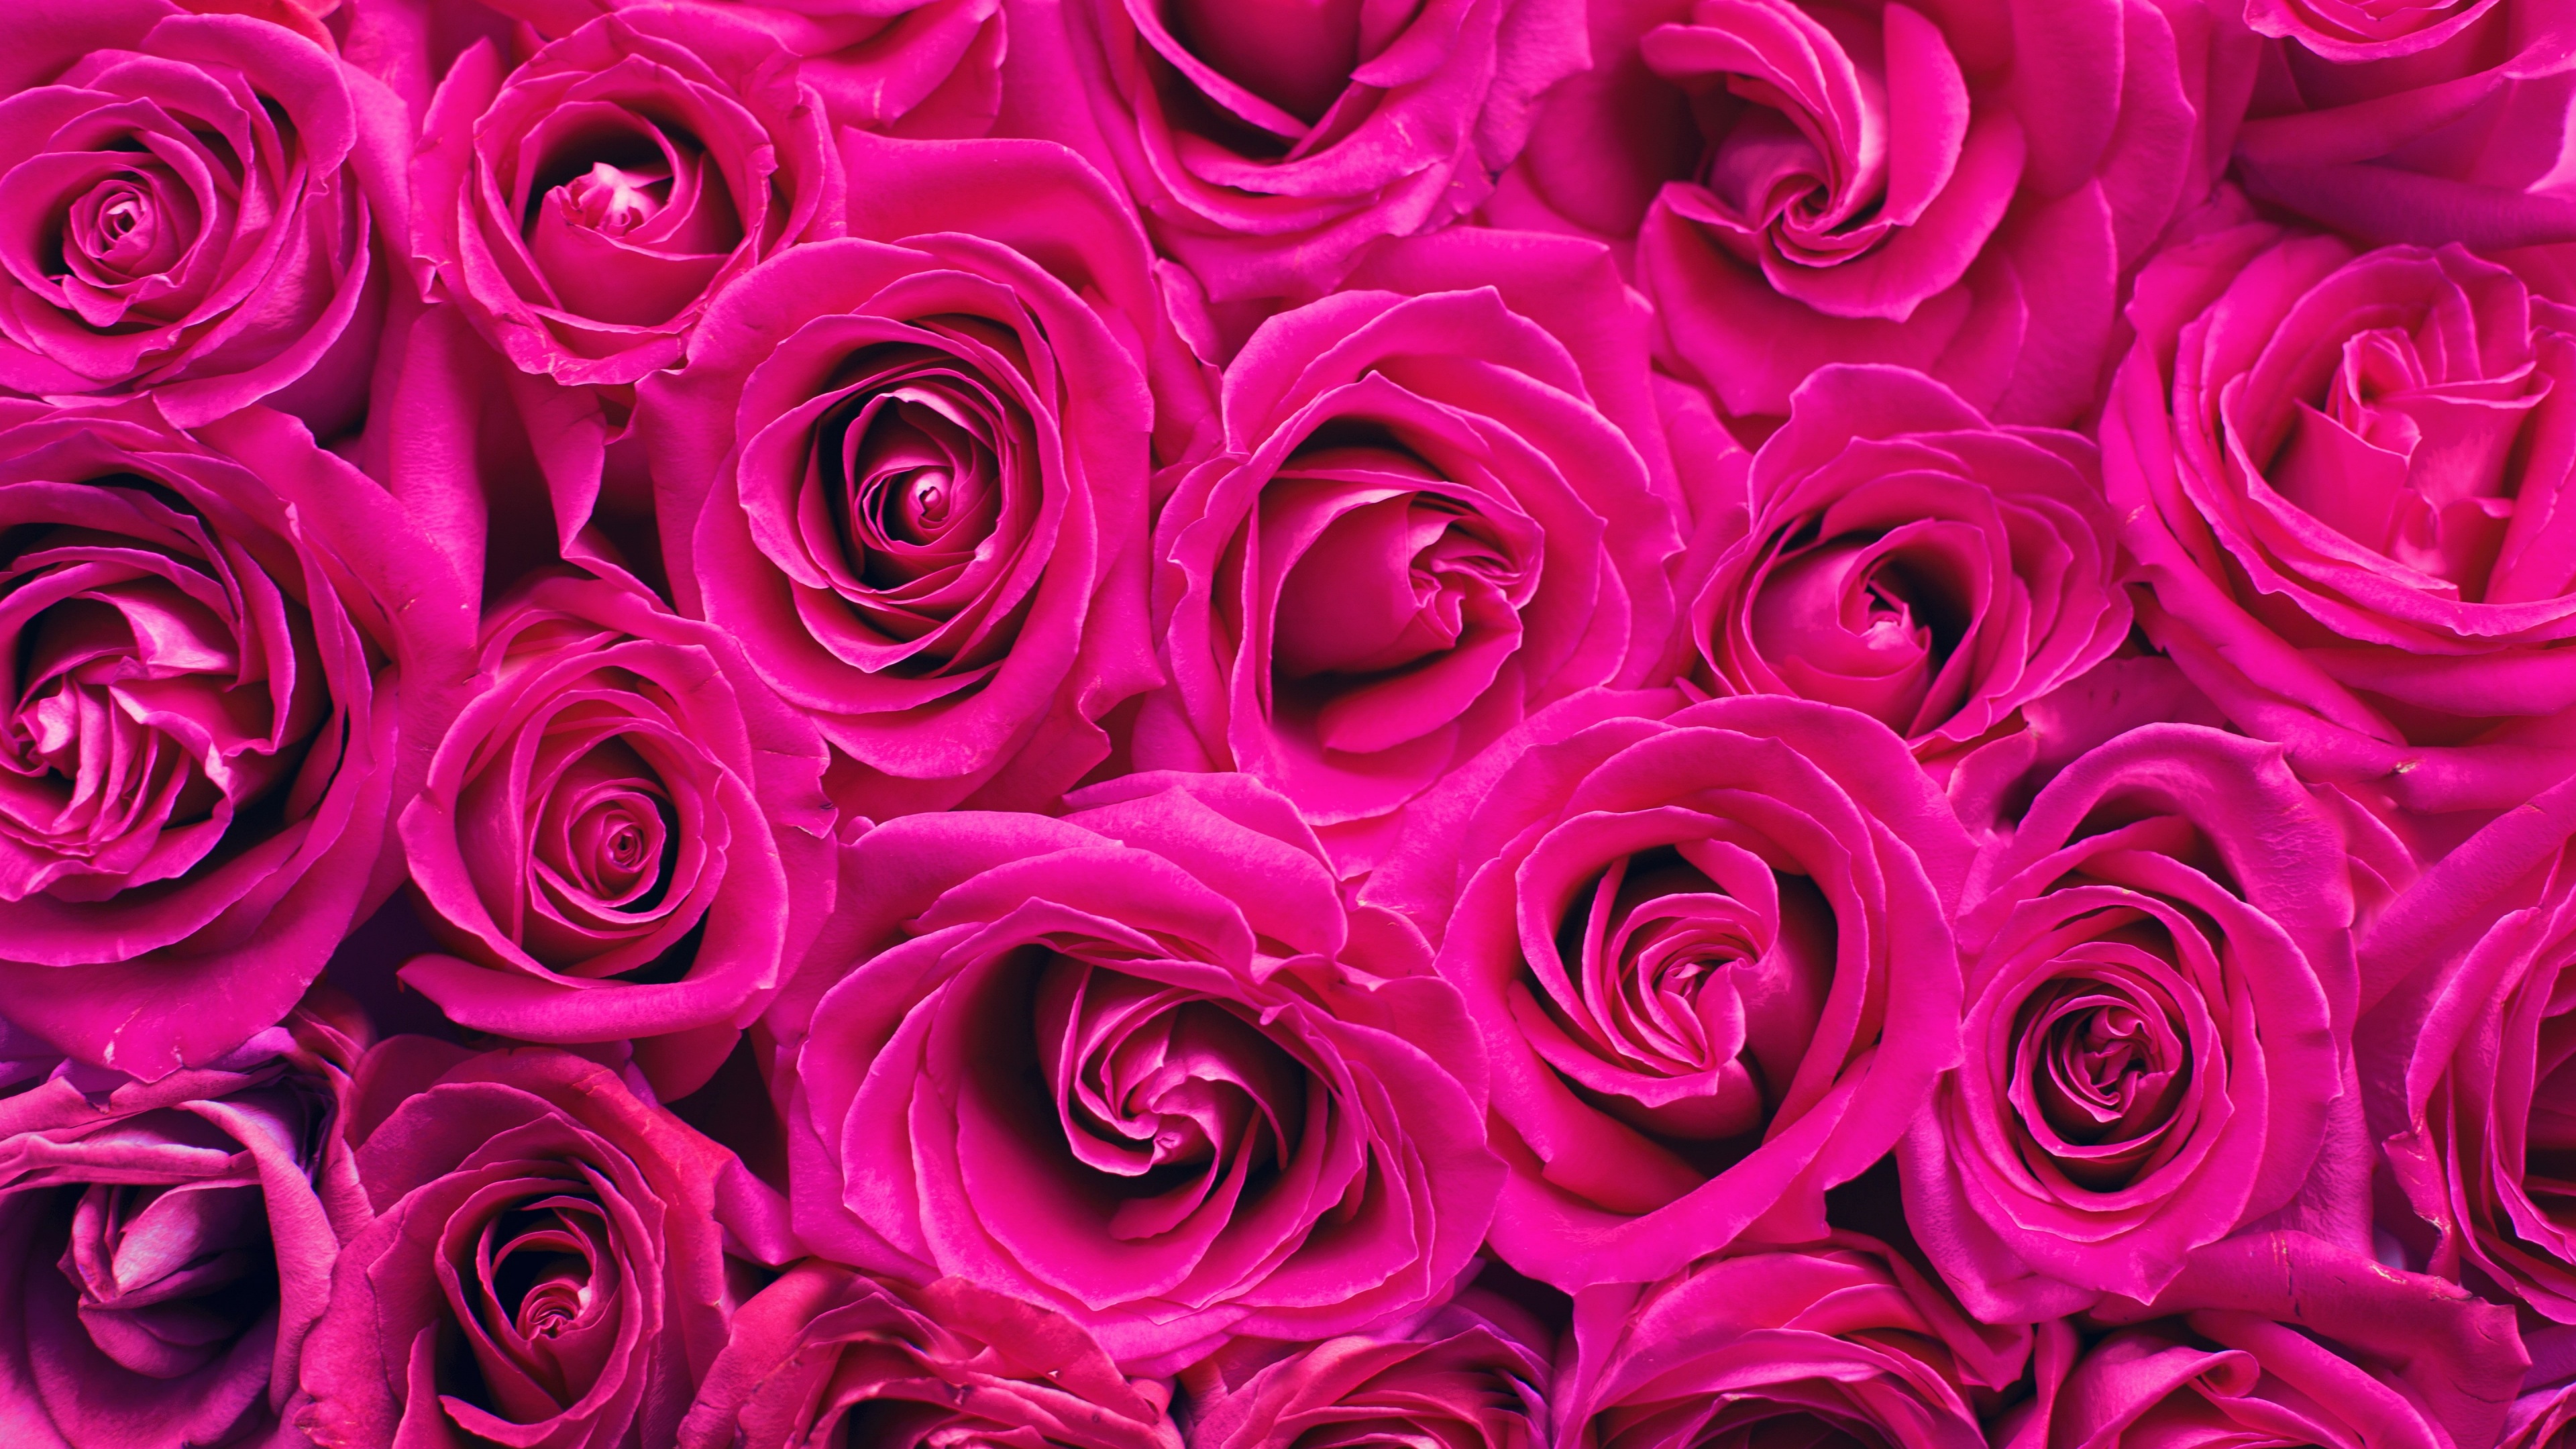 Hình nền hoa hồng 4K: Hình nền hoa hồng 4k sẽ khiến cho màn hình của bạn trở nên sống động và tuyệt đẹp hơn bao giờ hết. Khám phá vẻ đẹp tự nhiên và màu sắc sống động của những bông hoa hồng đầy mê hoặc này. Hãy tận hưởng những khoảnh khắc đáng nhớ trên màn hình của bạn với hình nền hoa hồng 4k này!